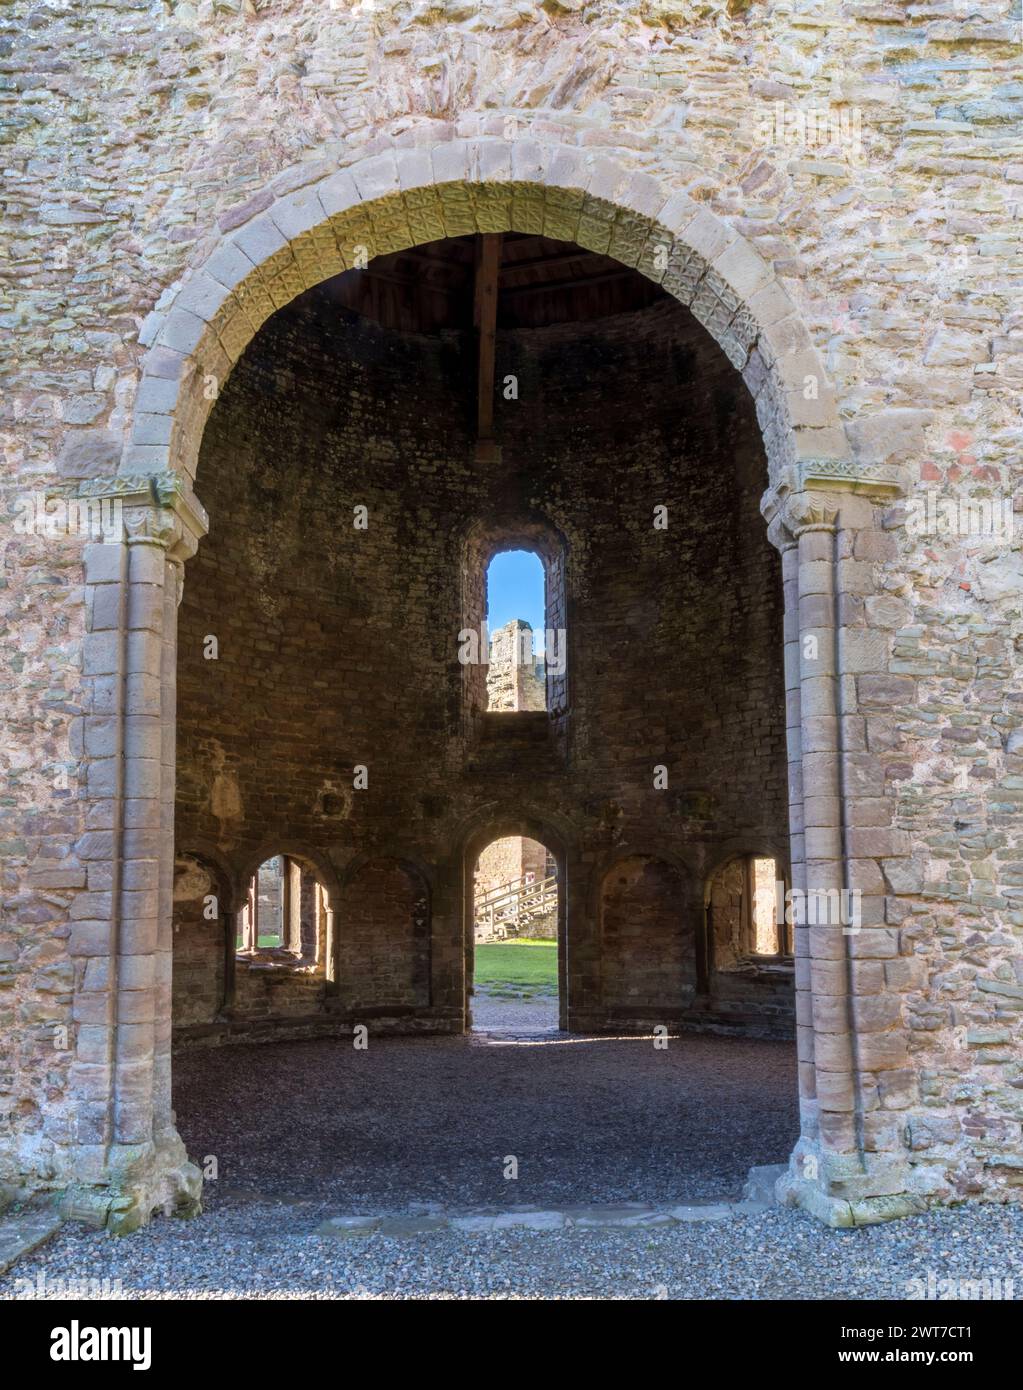 Vue par la porte principale dans la chapelle ronde du château de Ludlow. Shropshire, Angleterre. Novembre. Banque D'Images